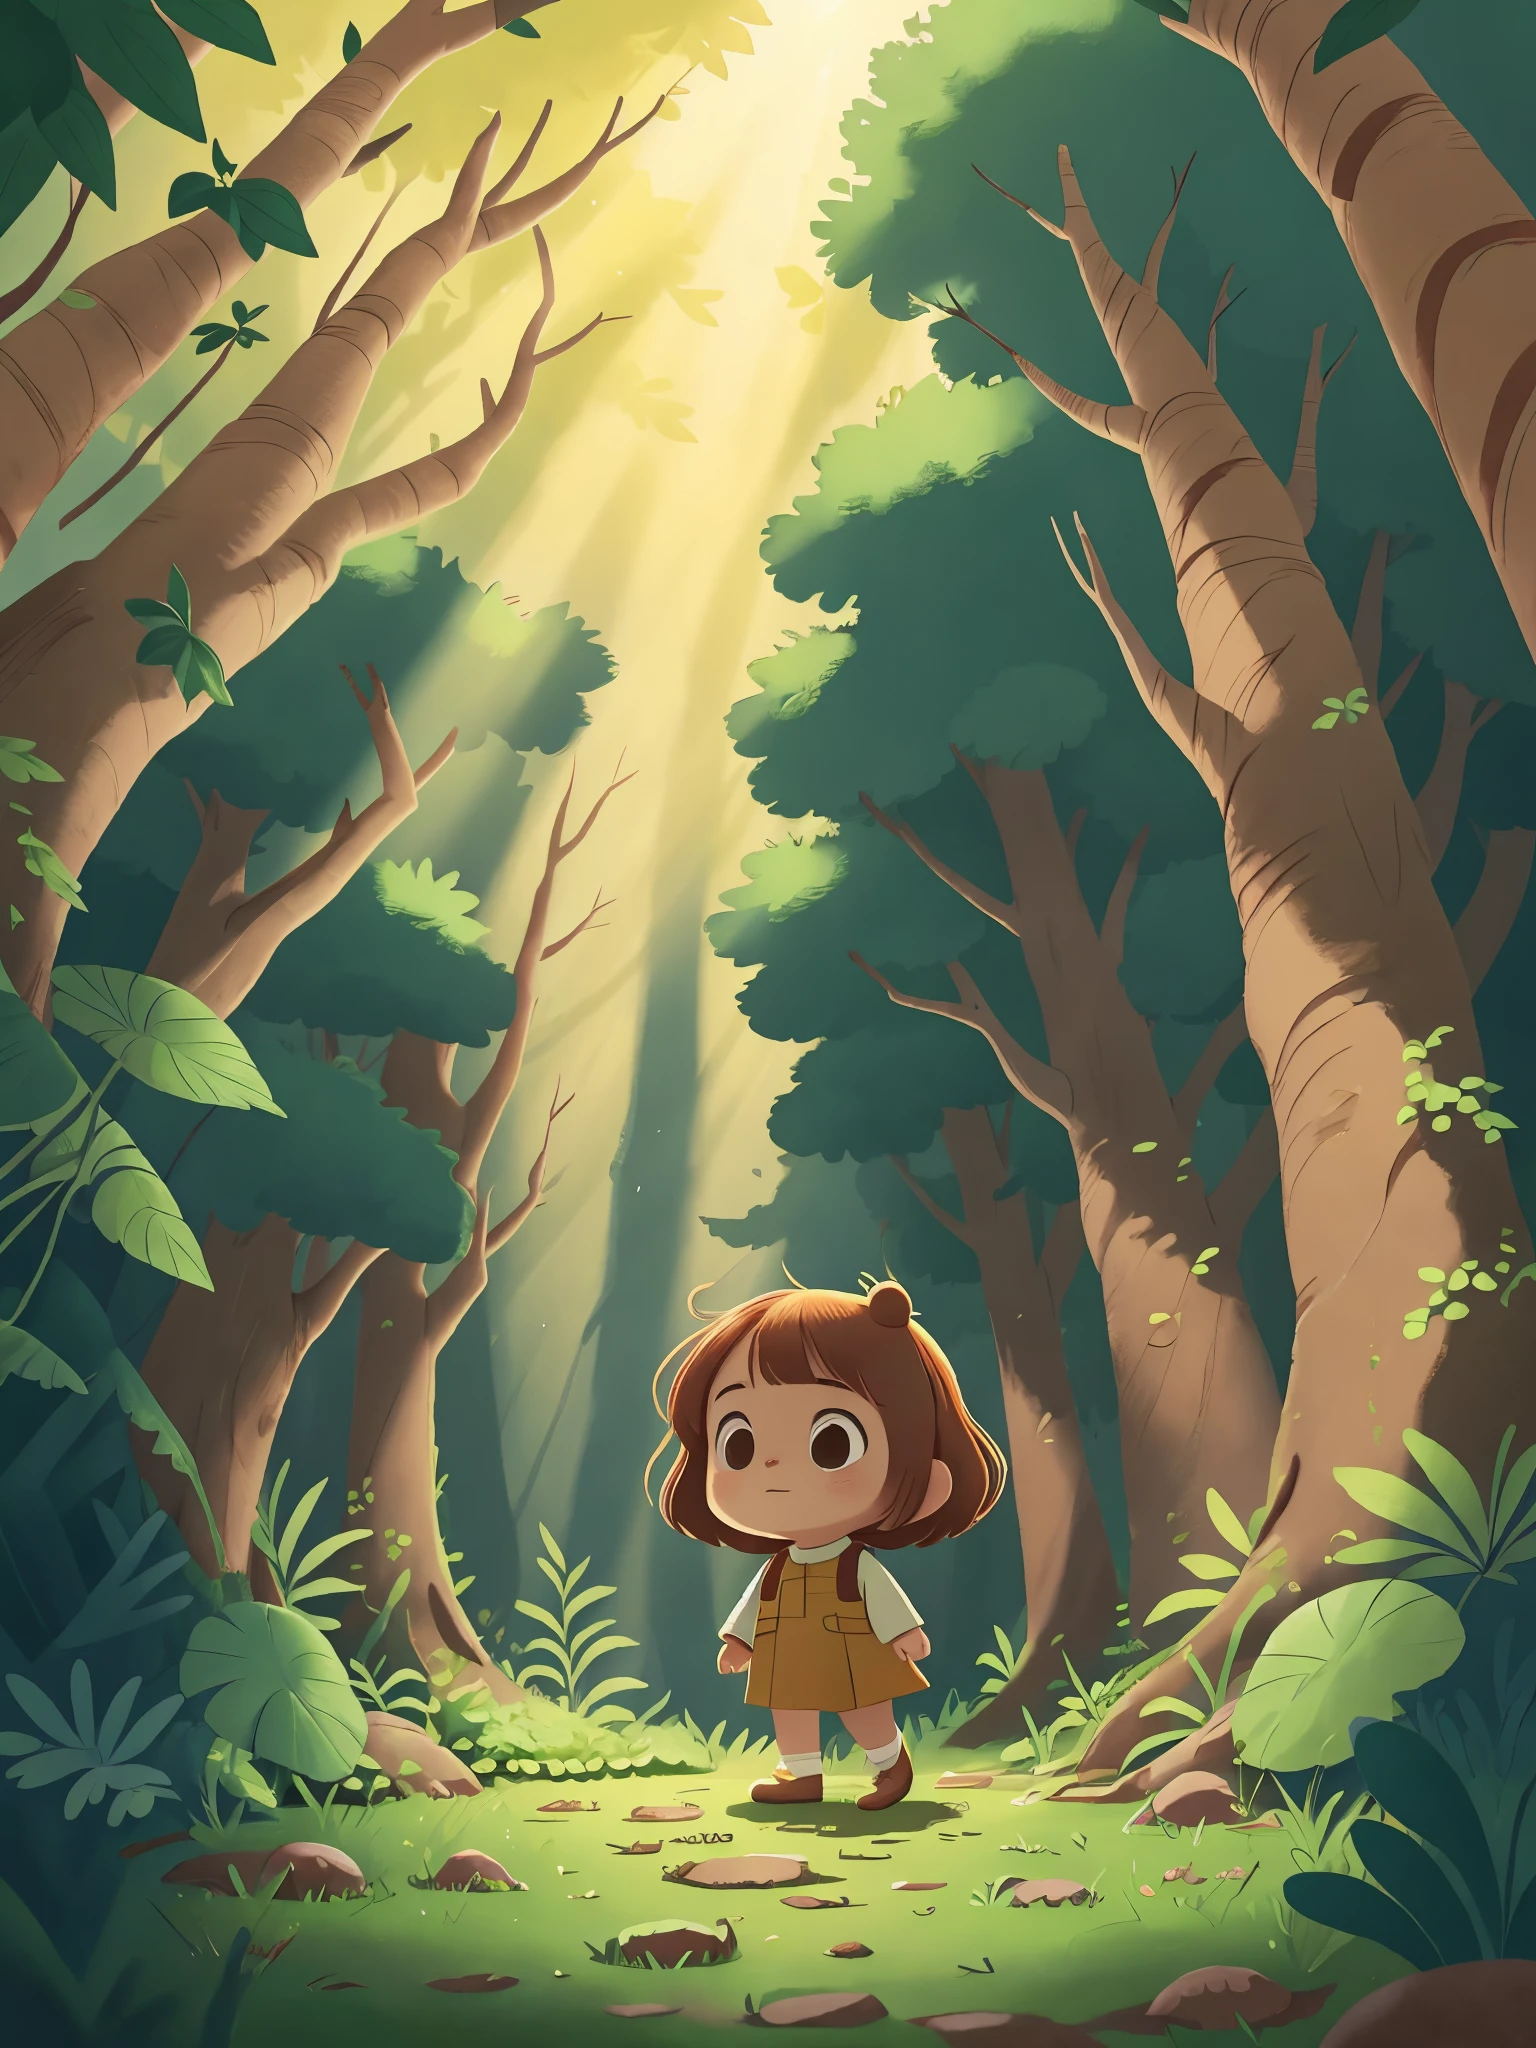  森の中を歩く，太陽は葉の間から輝き、地面にまだら模様の光と影を落とします，